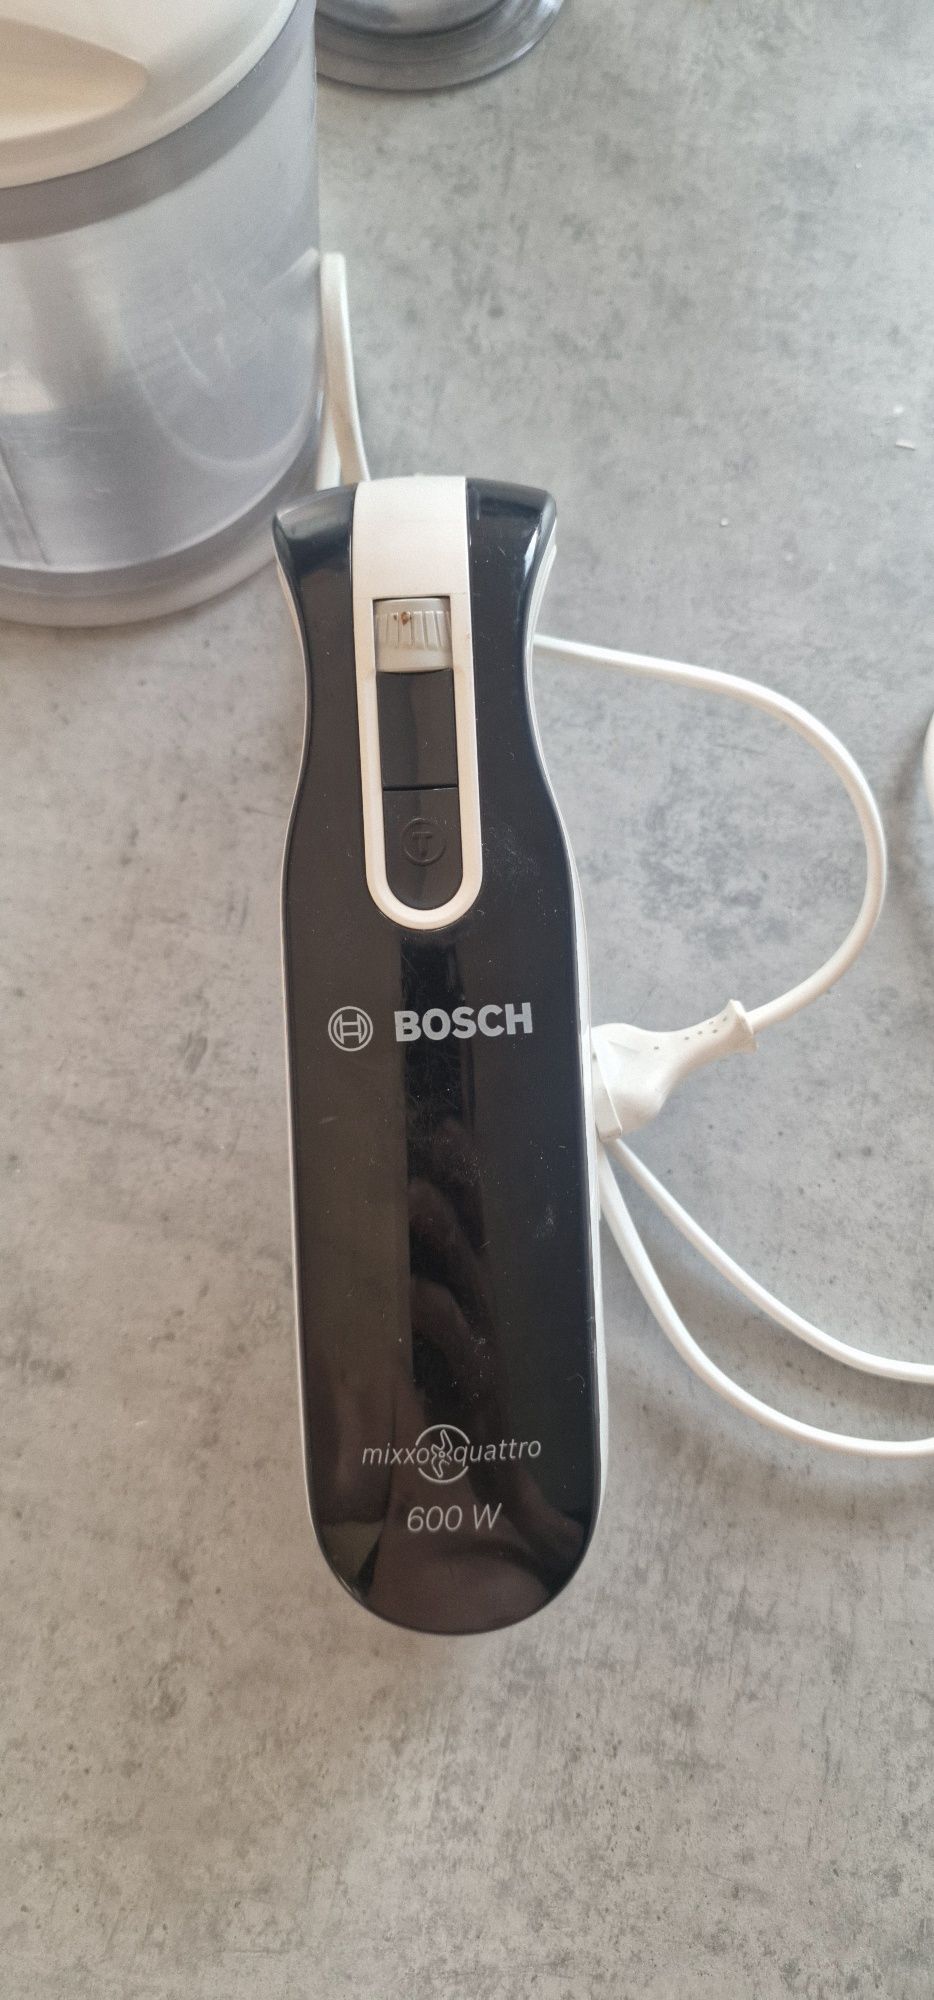 Blender Bosch mixxo quattro 600w